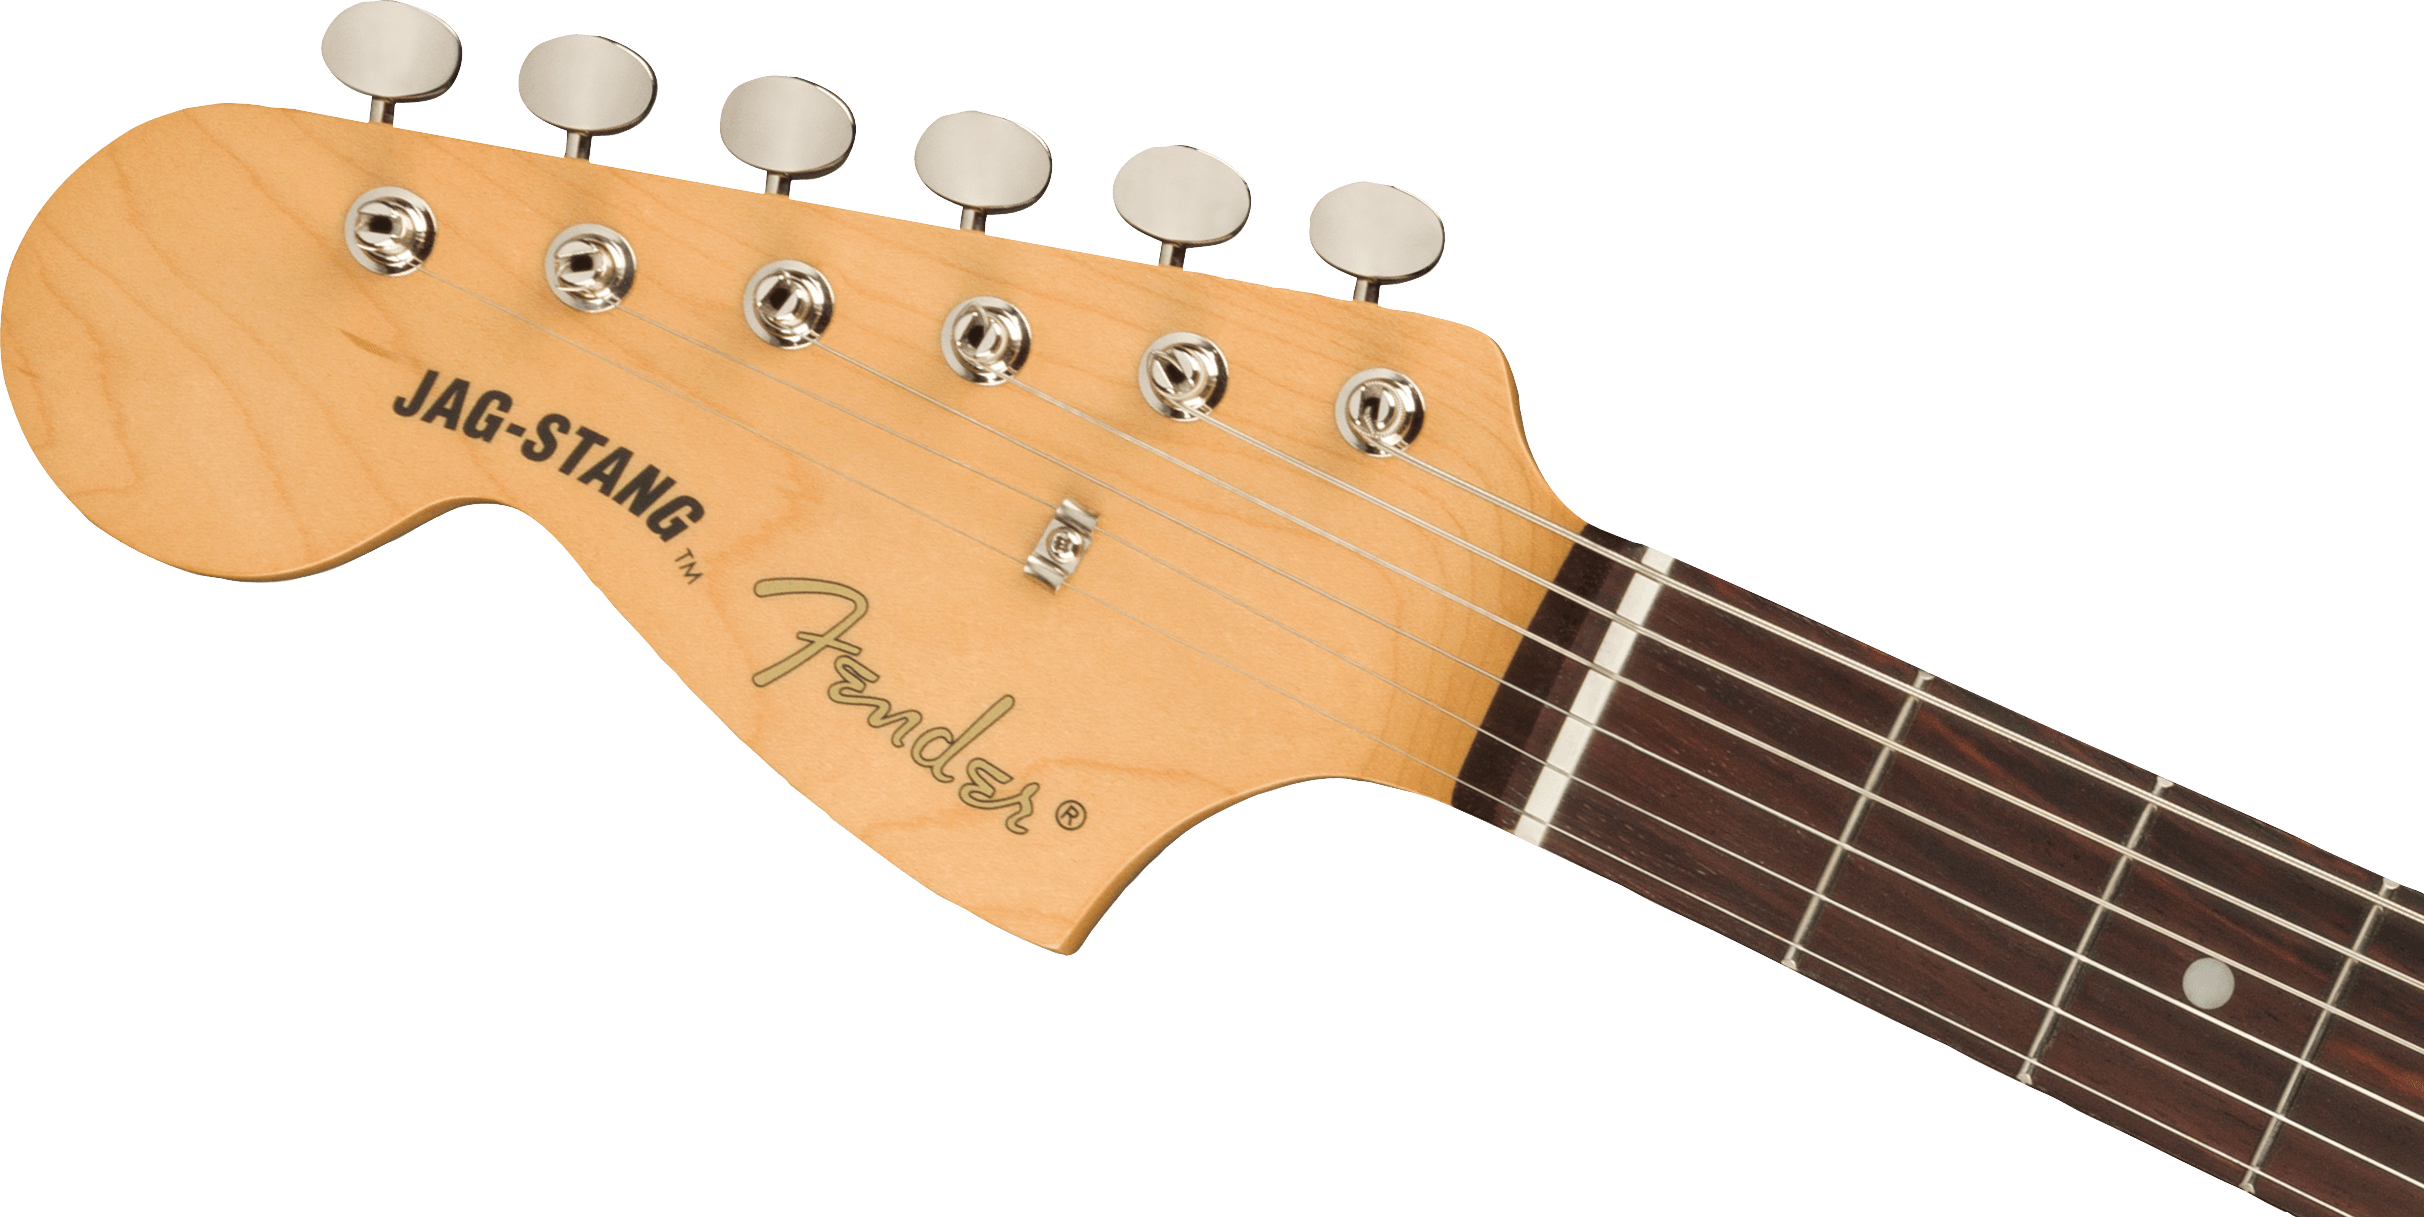 Fender Jag-stang Kurt Cobain Artist Gaucher Hs Trem Rw - Fiesta Red - Guitarra electrica para zurdos - Variation 3